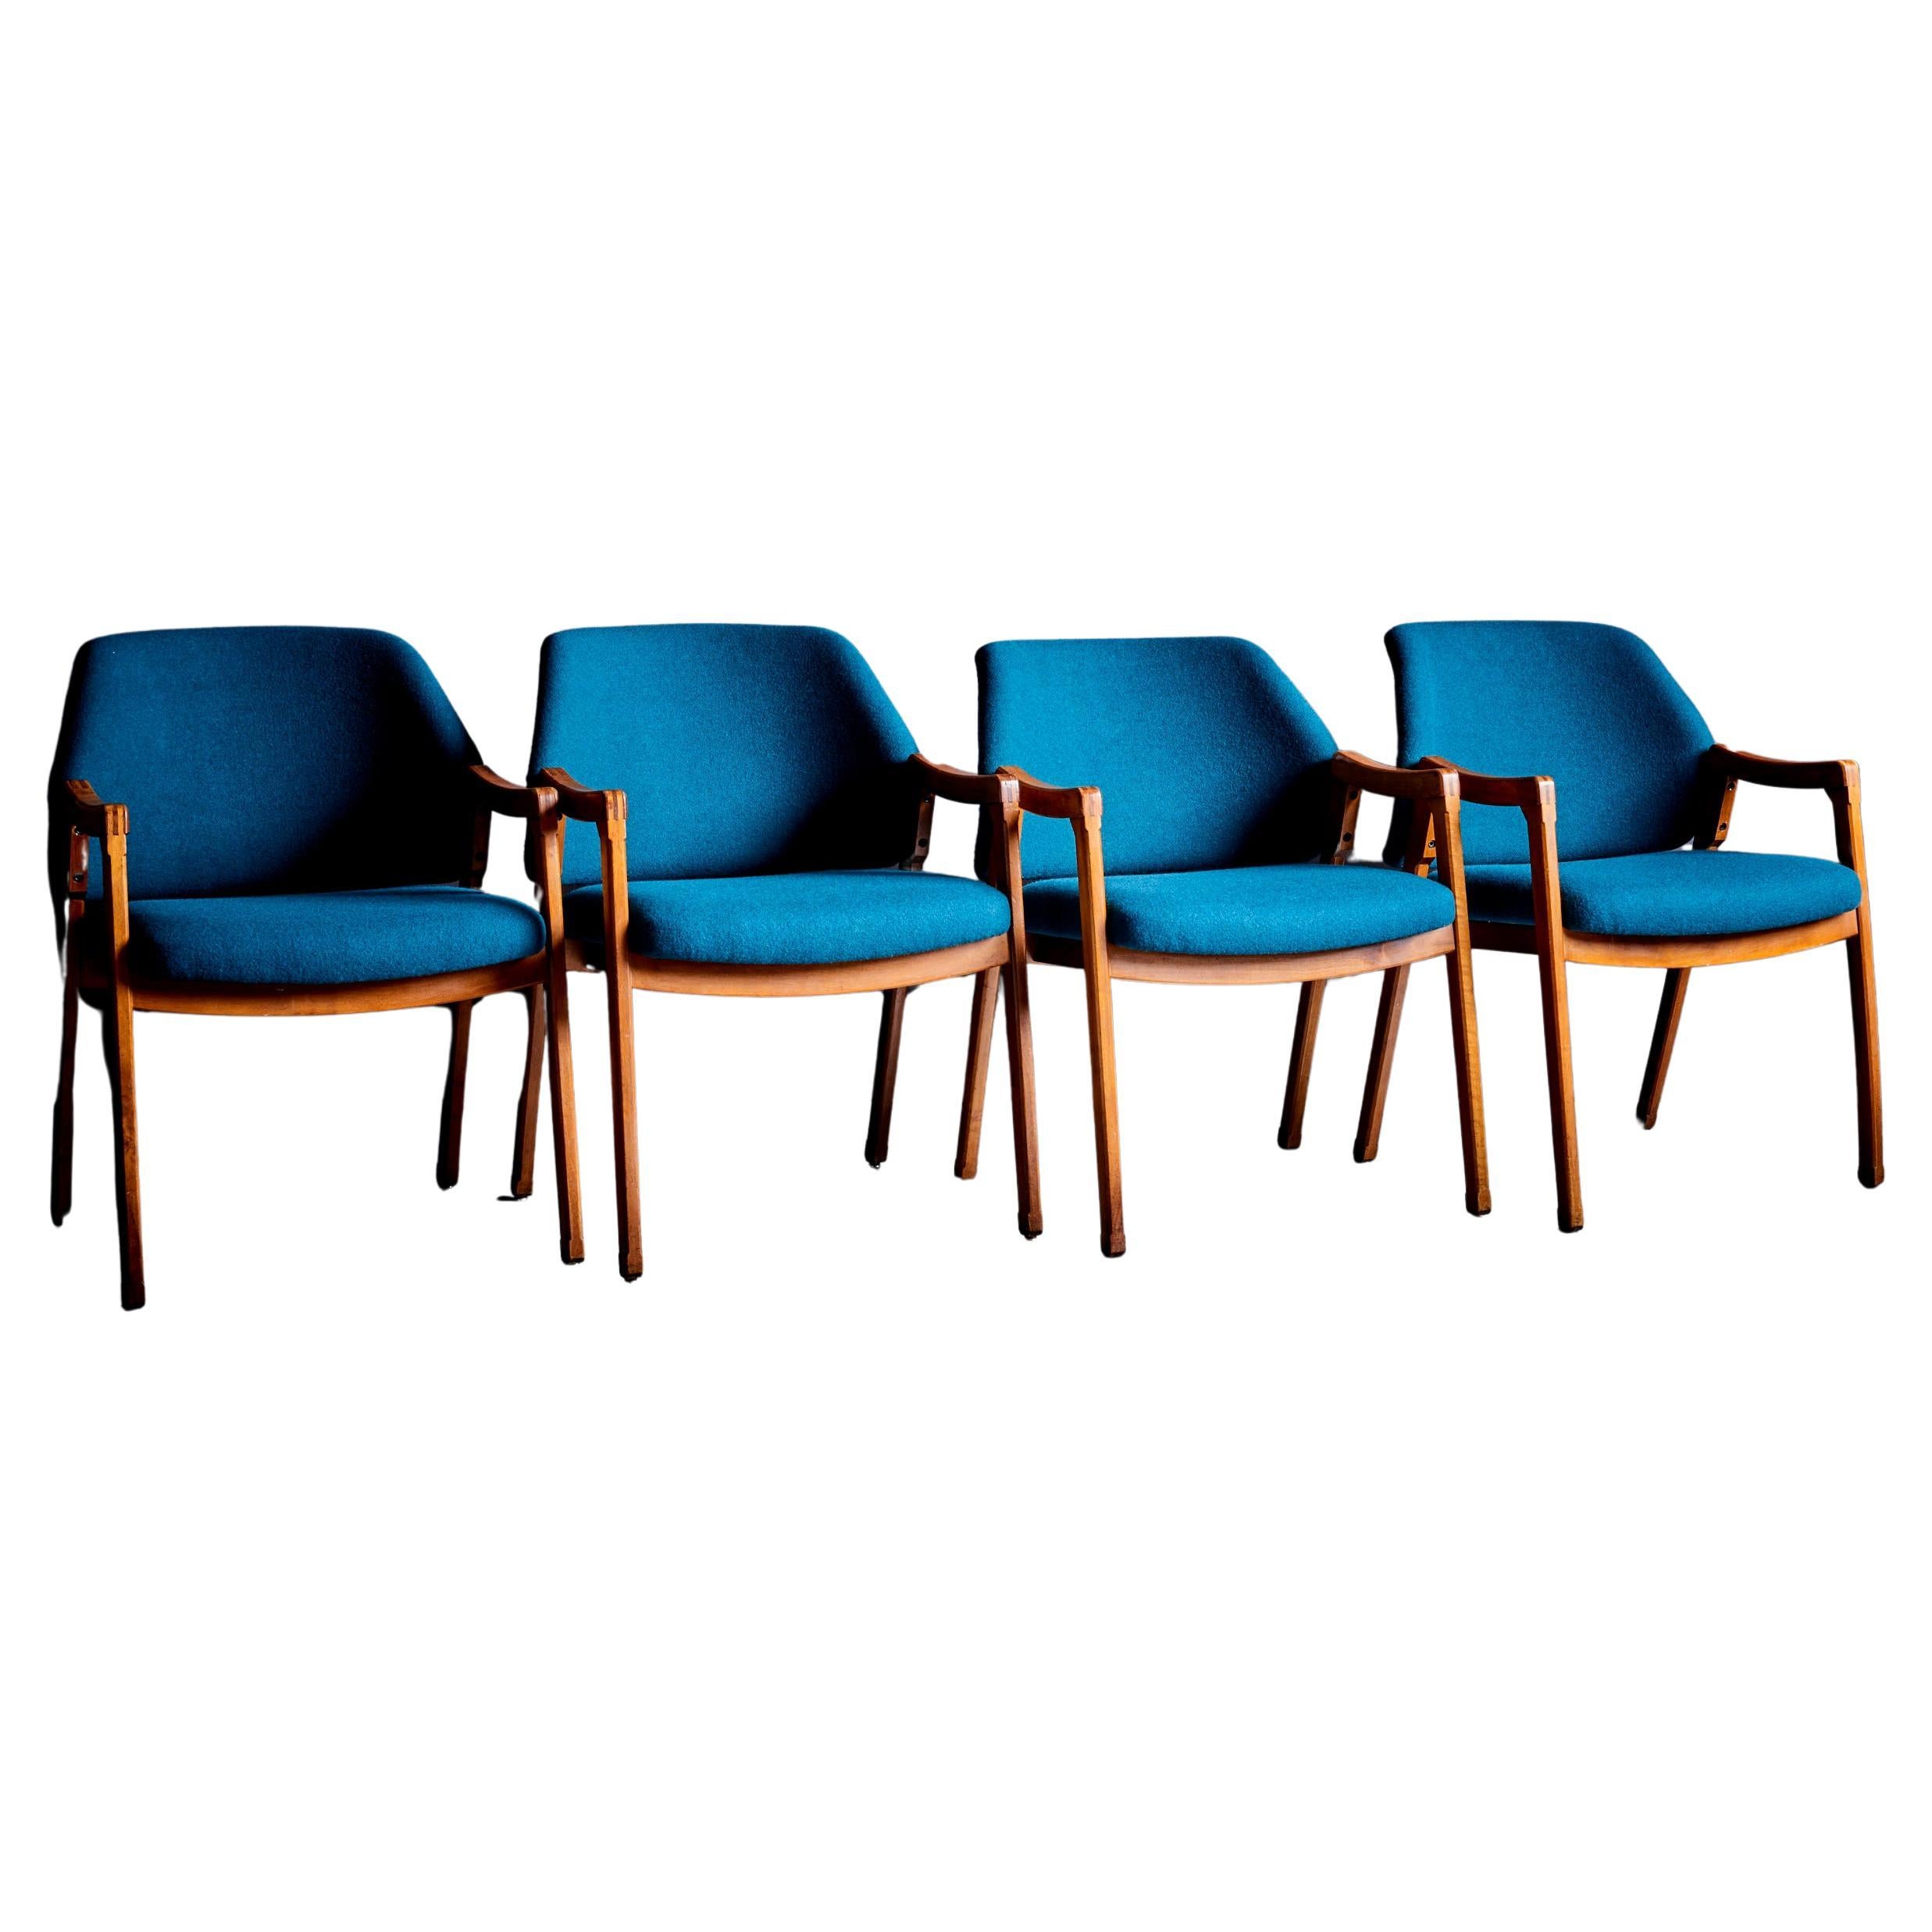 Ensemble de 4 chaises de salle à manger Ico Parisi Cassina nouvellement tapissées de tissu bleu 